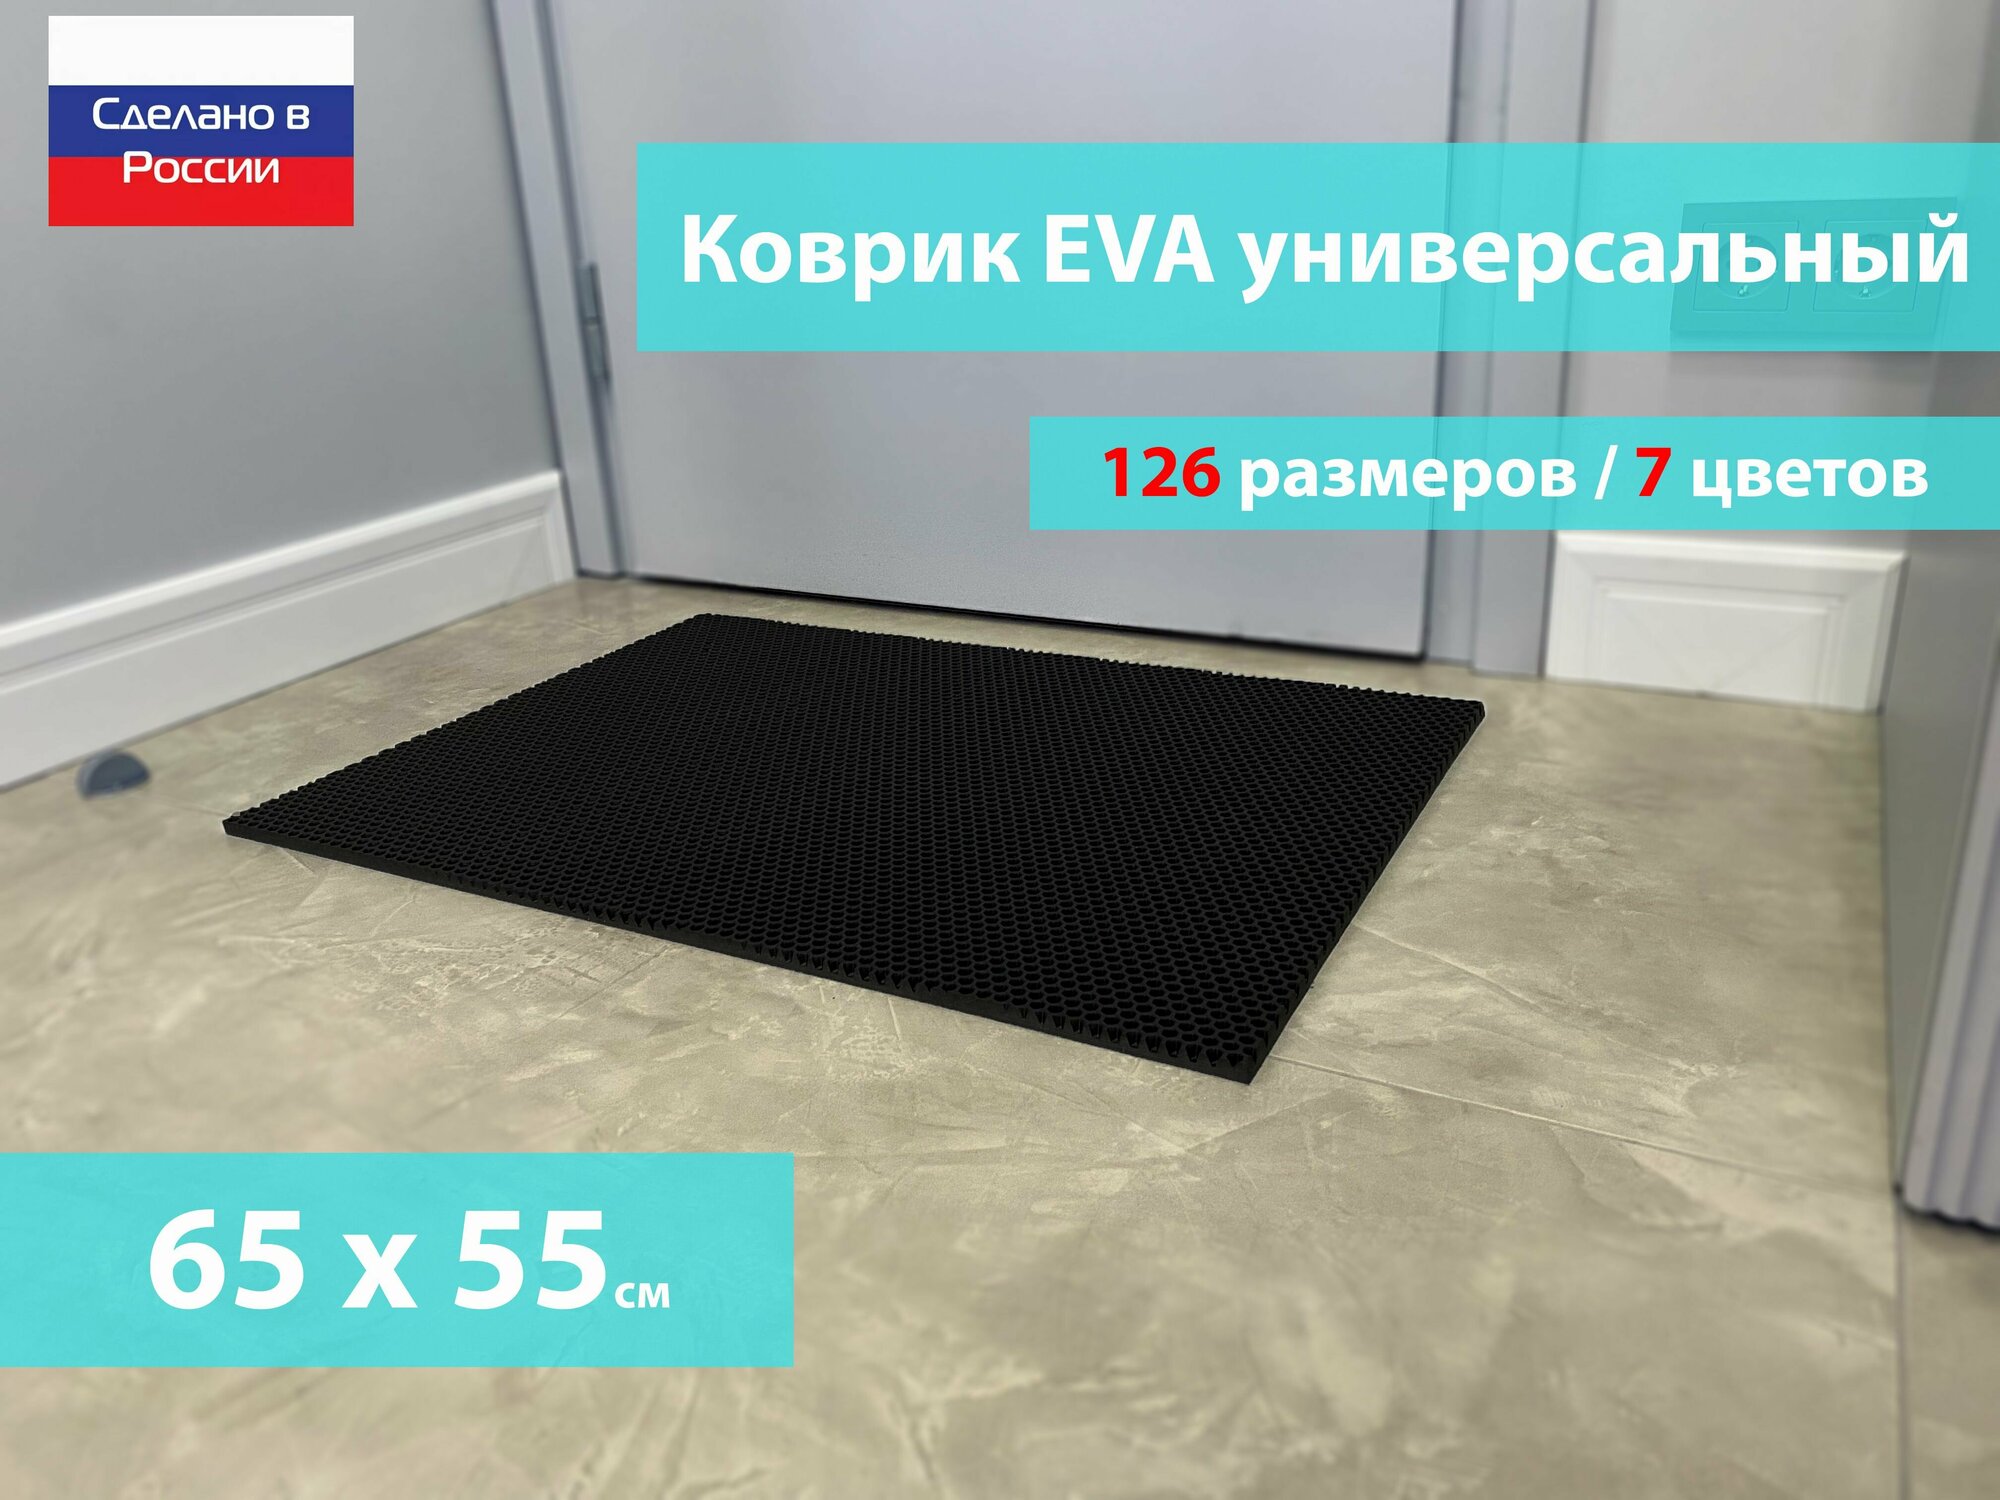 Коврик придверный EVA (ЕВА) в прихожую для обуви / Ковер ЭВА на пол перед дверью/ черный / размер 65 х 55 см